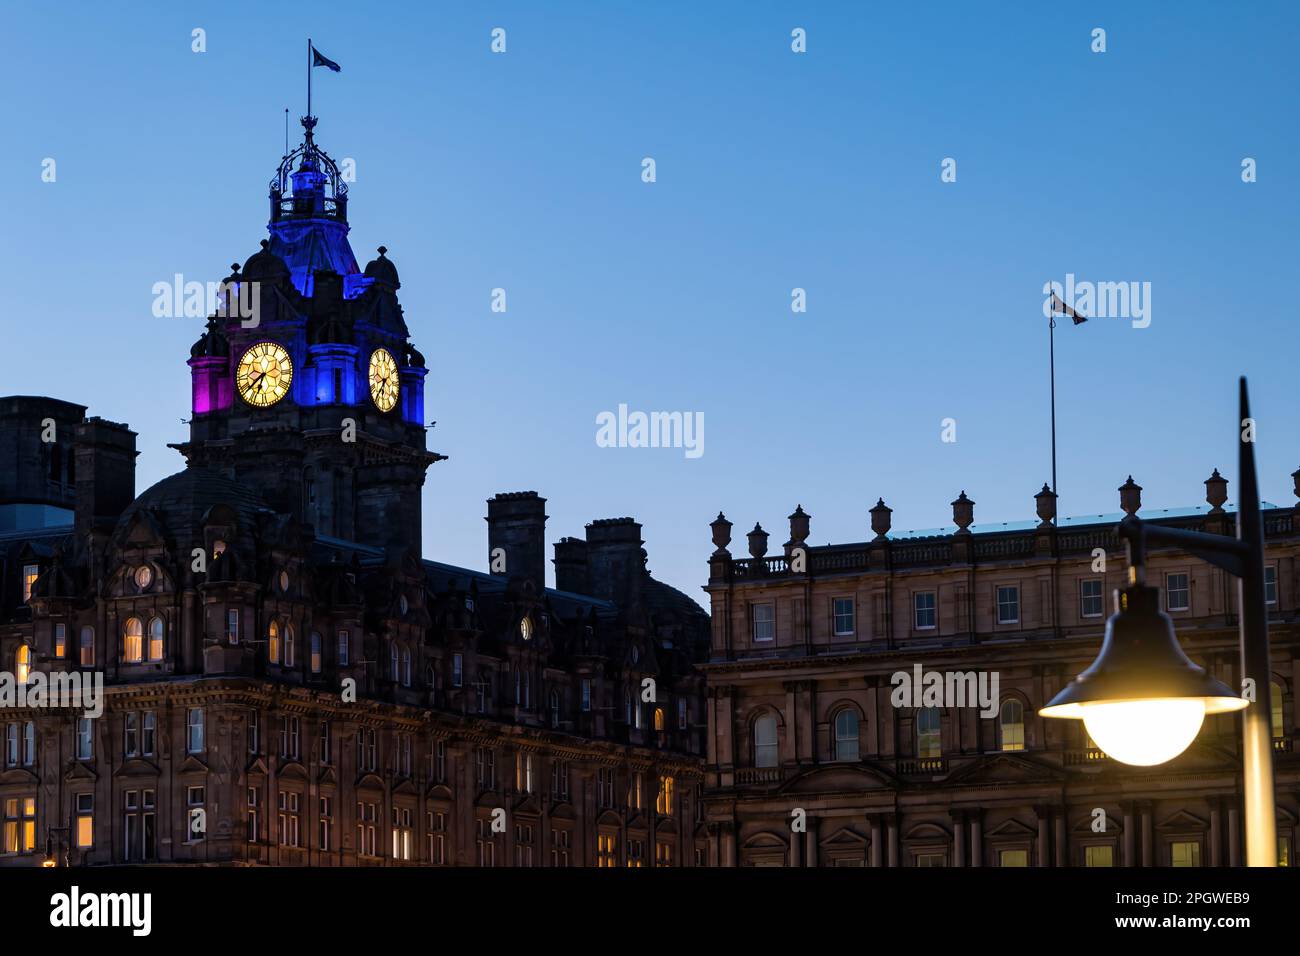 Der Uhrenturm des Balmoral Hotels erleuchtet in der Dämmerung oder in der Dämmerung mit klarem Himmel, Edinburgh, Schottland, Großbritannien Stockfoto